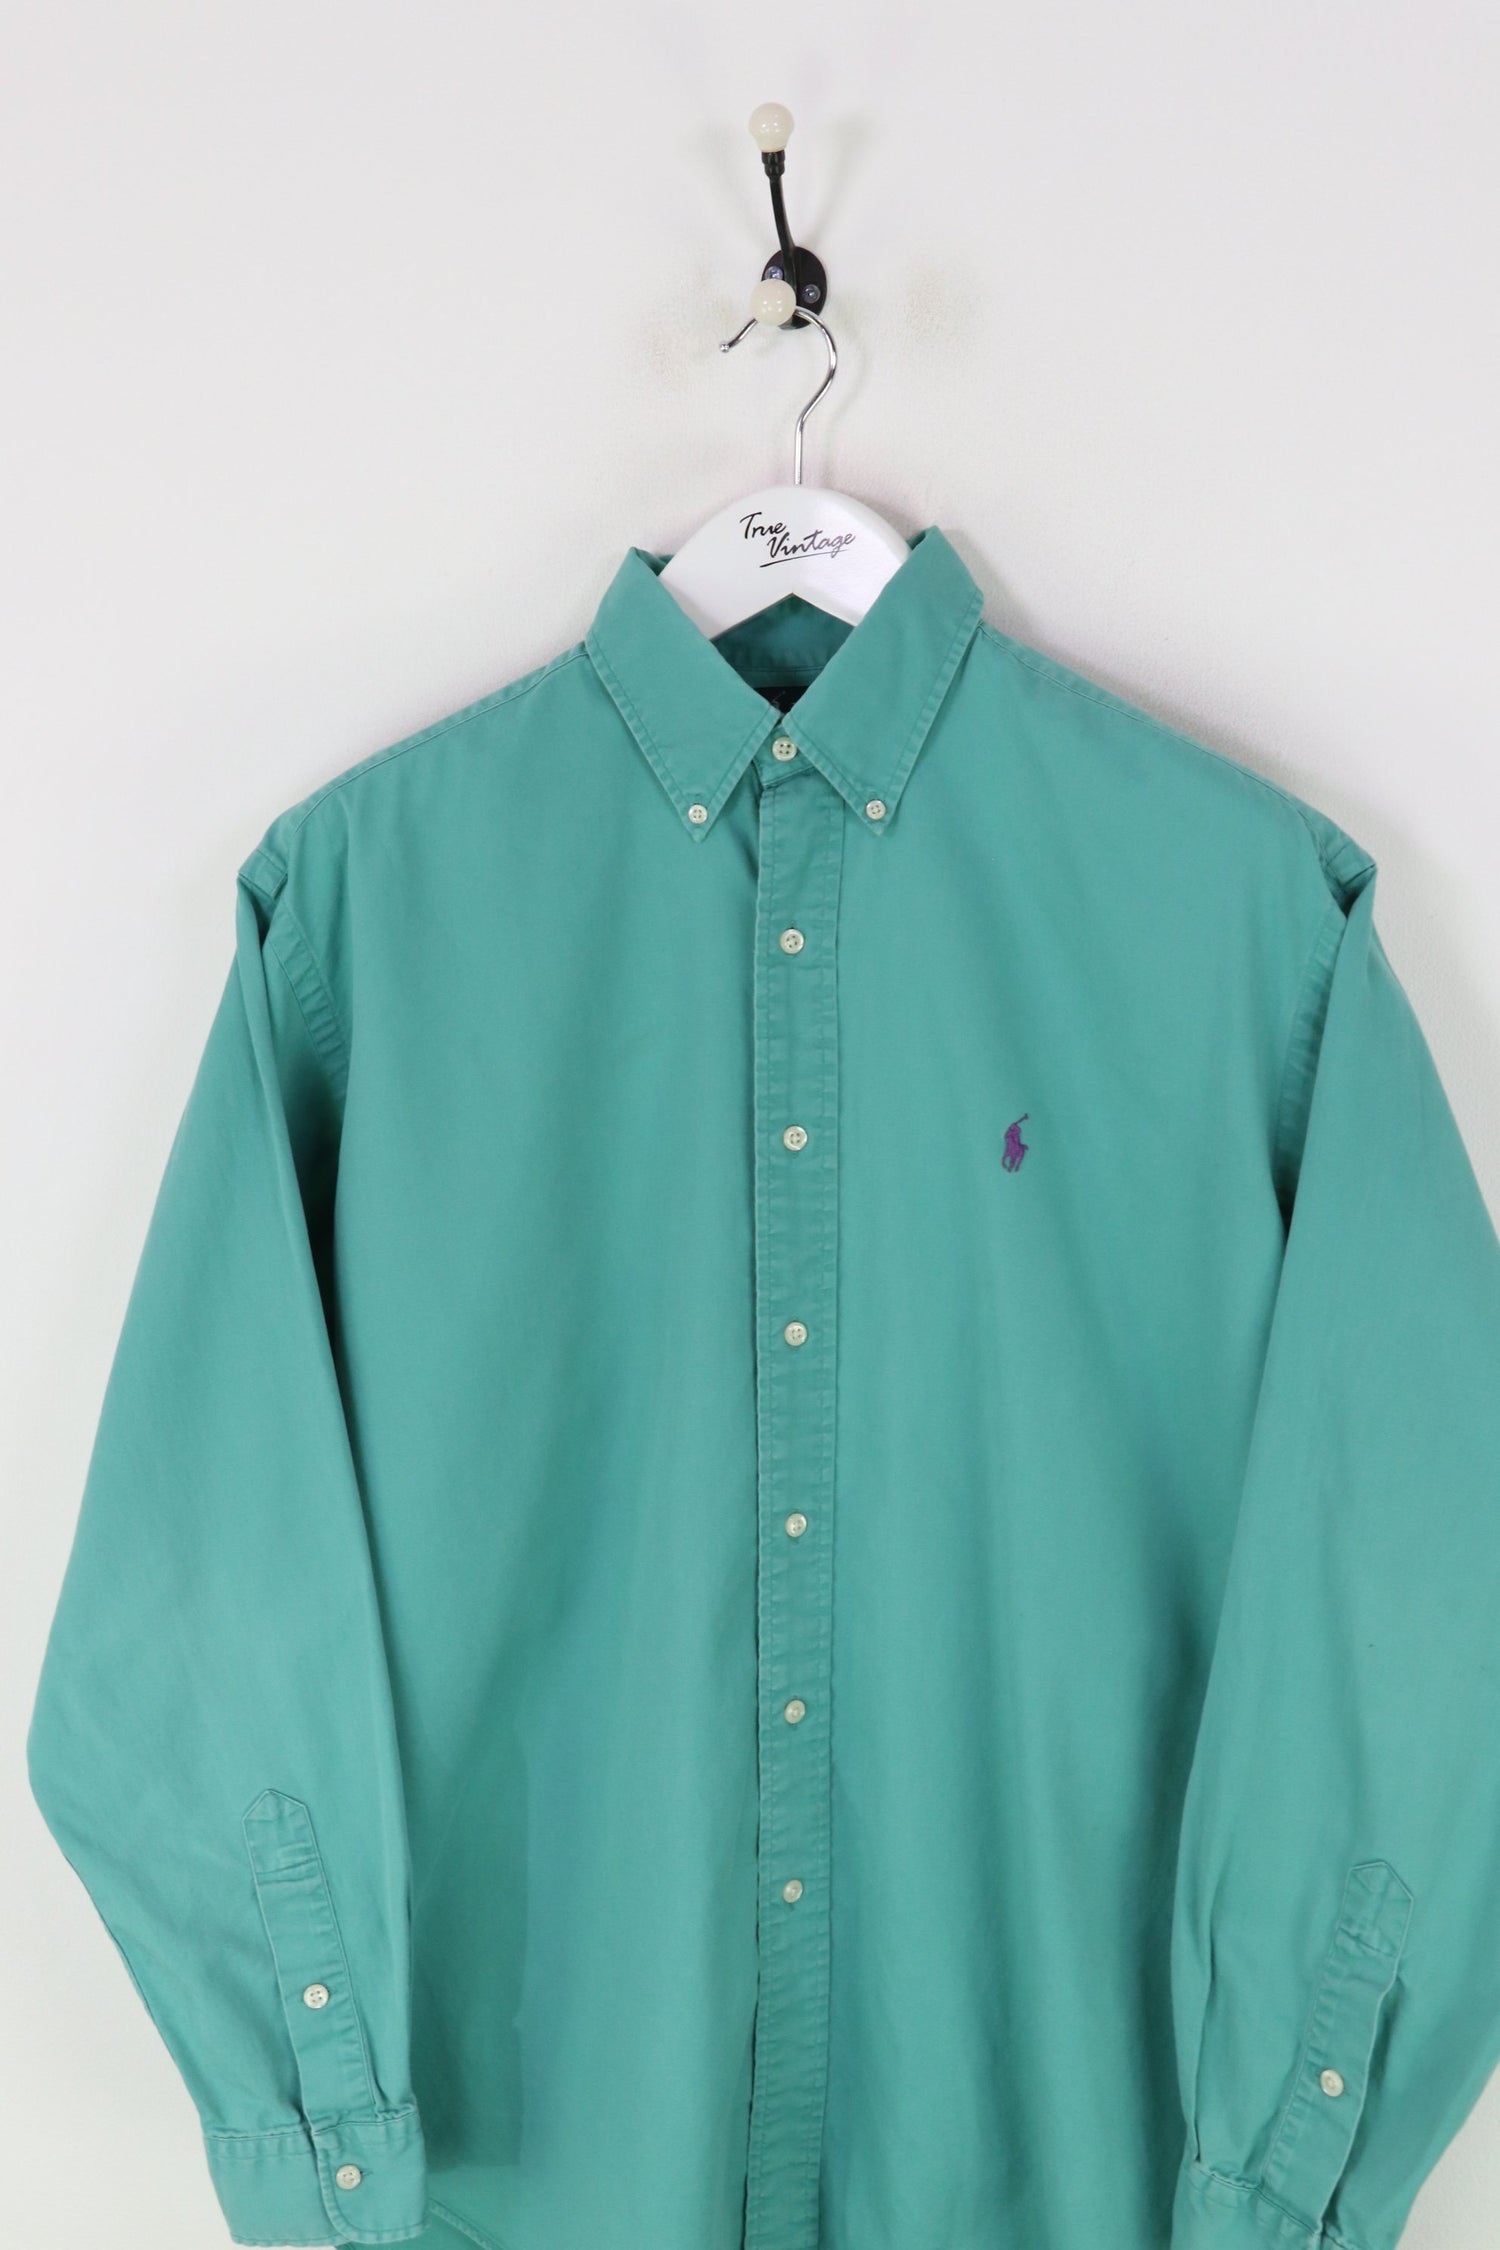 Ralph Lauren Shirt Green XXL